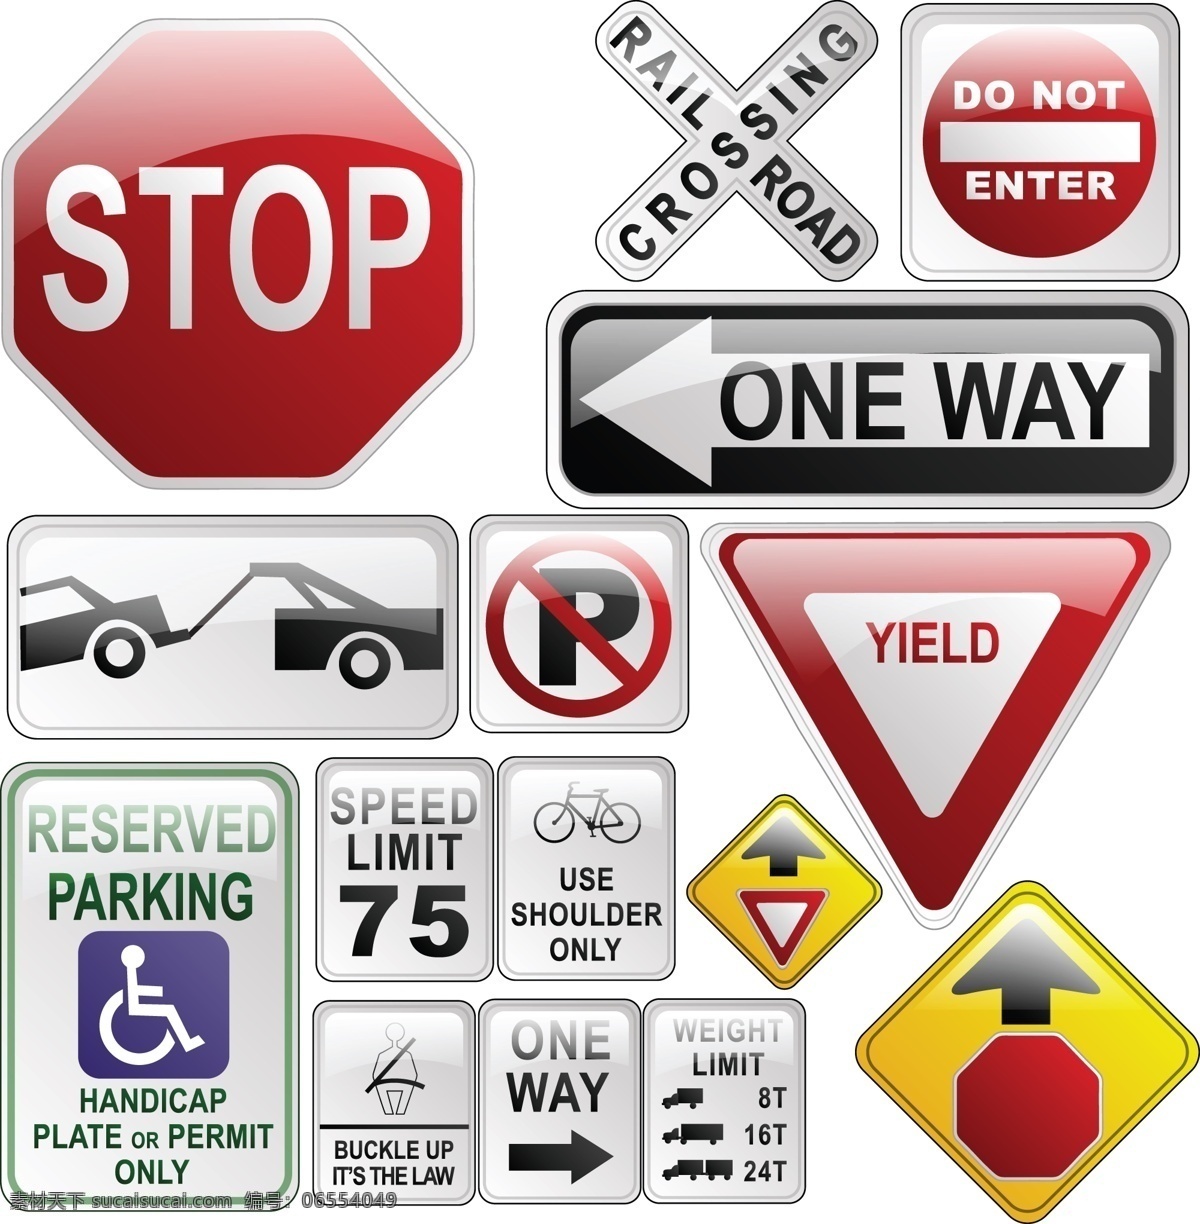 交通 路标 指示牌 矢量图 标示设计 道路指示牌 禁止停车 警示标志 交通路标 停止图标 其他矢量图